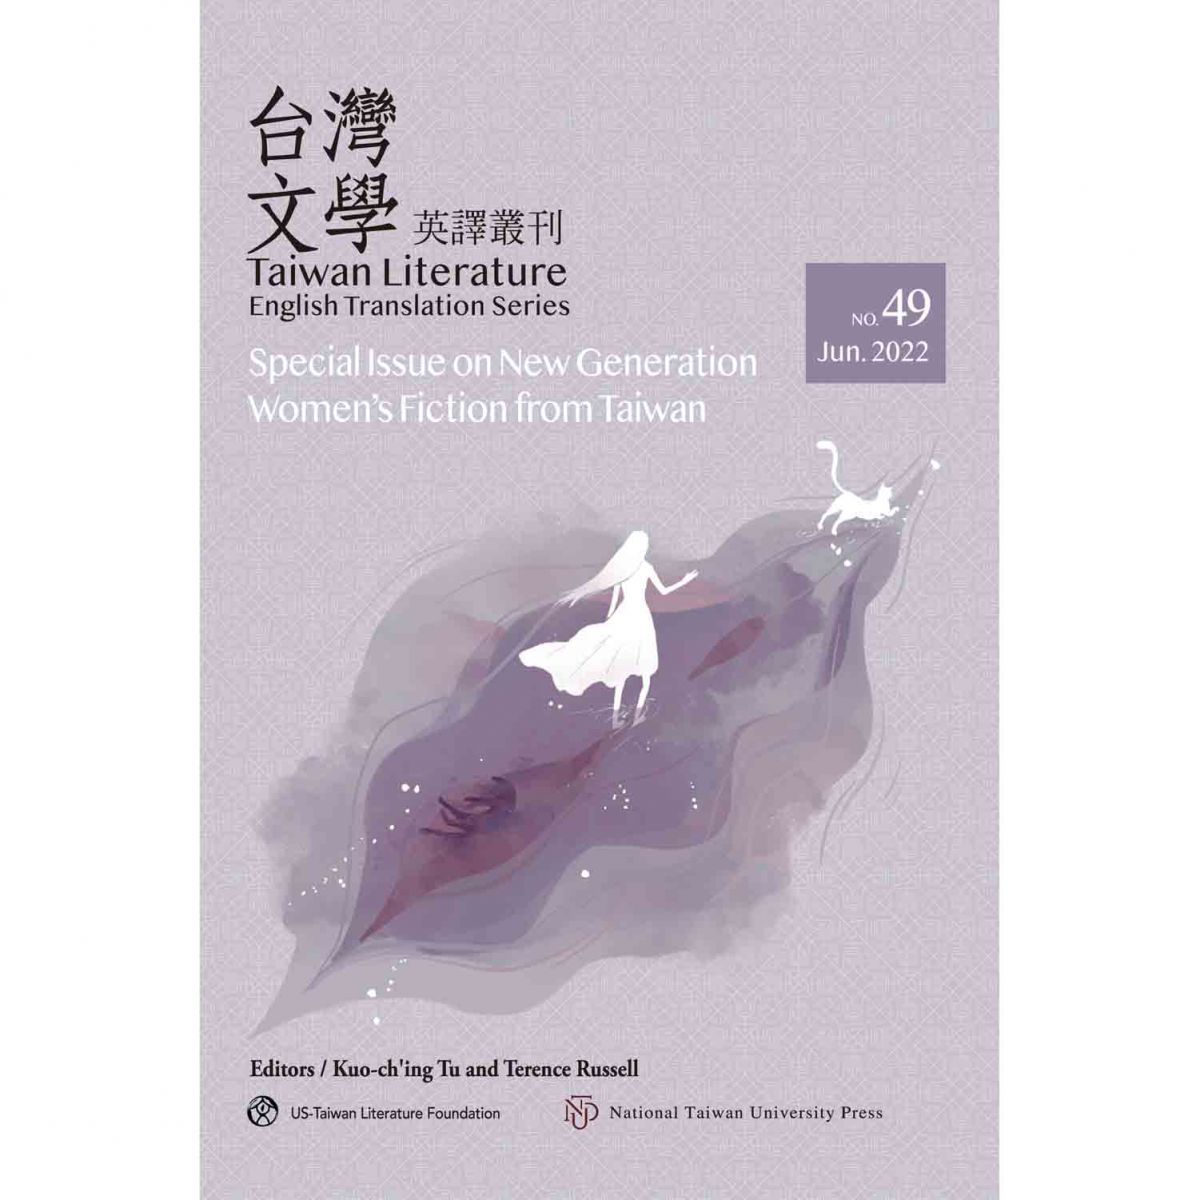 《台灣文學英譯叢刊（No. 49）：台灣新時代女性小說專輯》新書出版